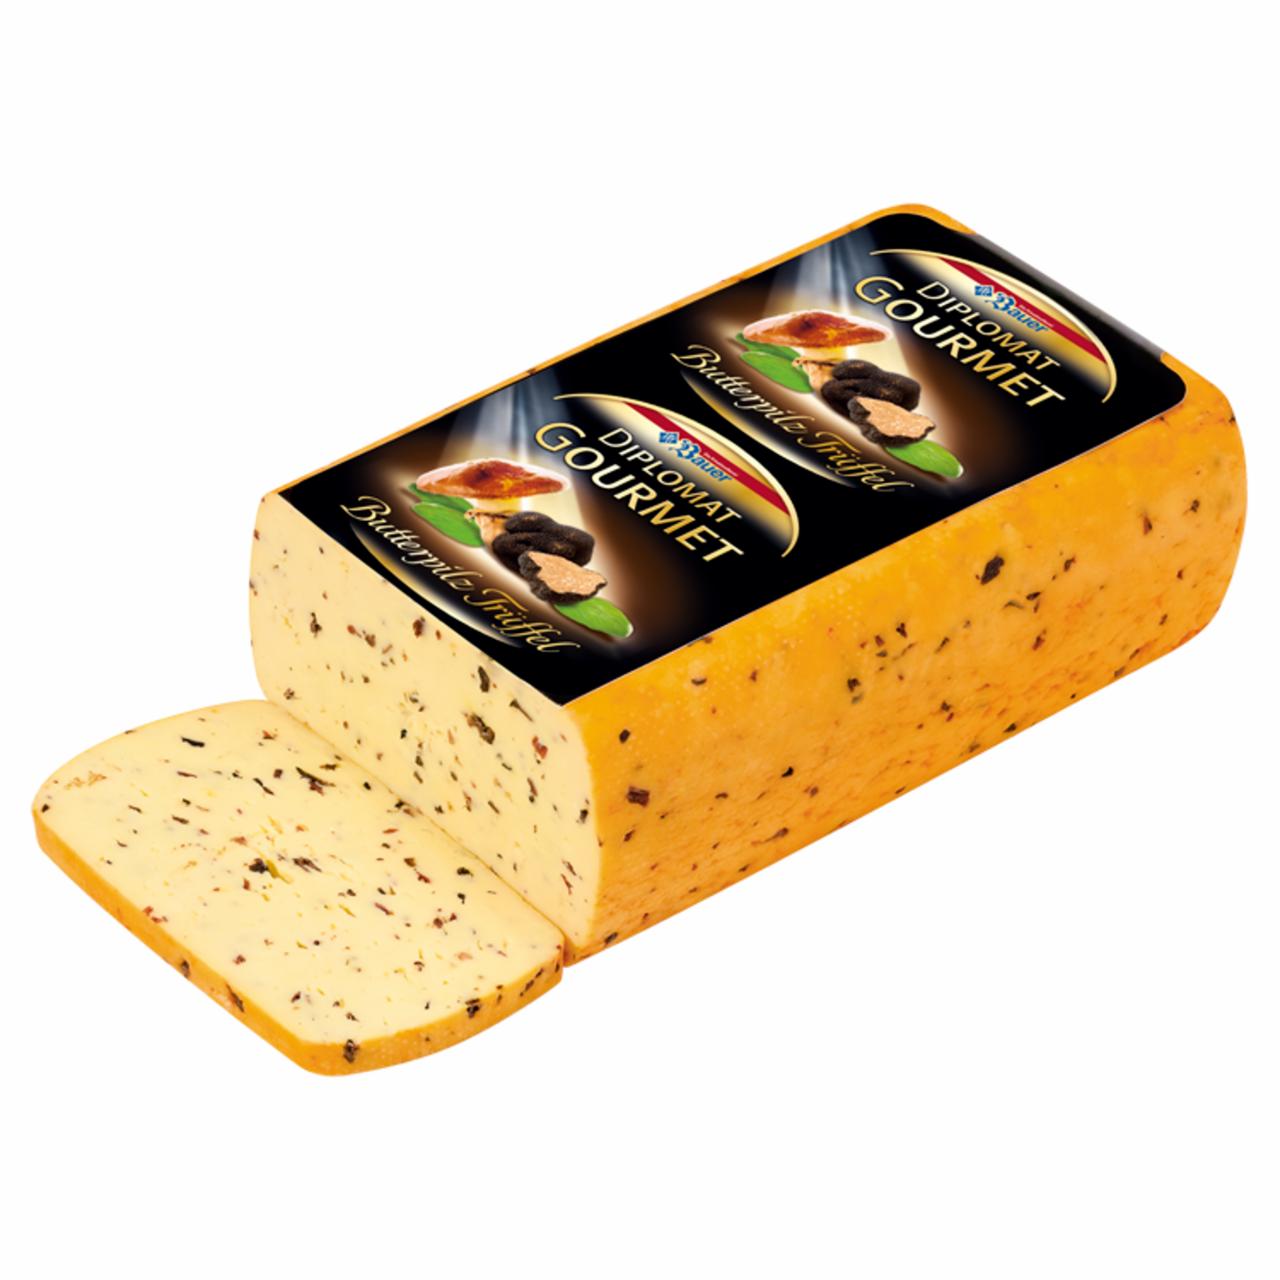 Képek - Bauer Diplomat Gourmet zsíros, félkemény sajt szarvasgombás ízesítéssel